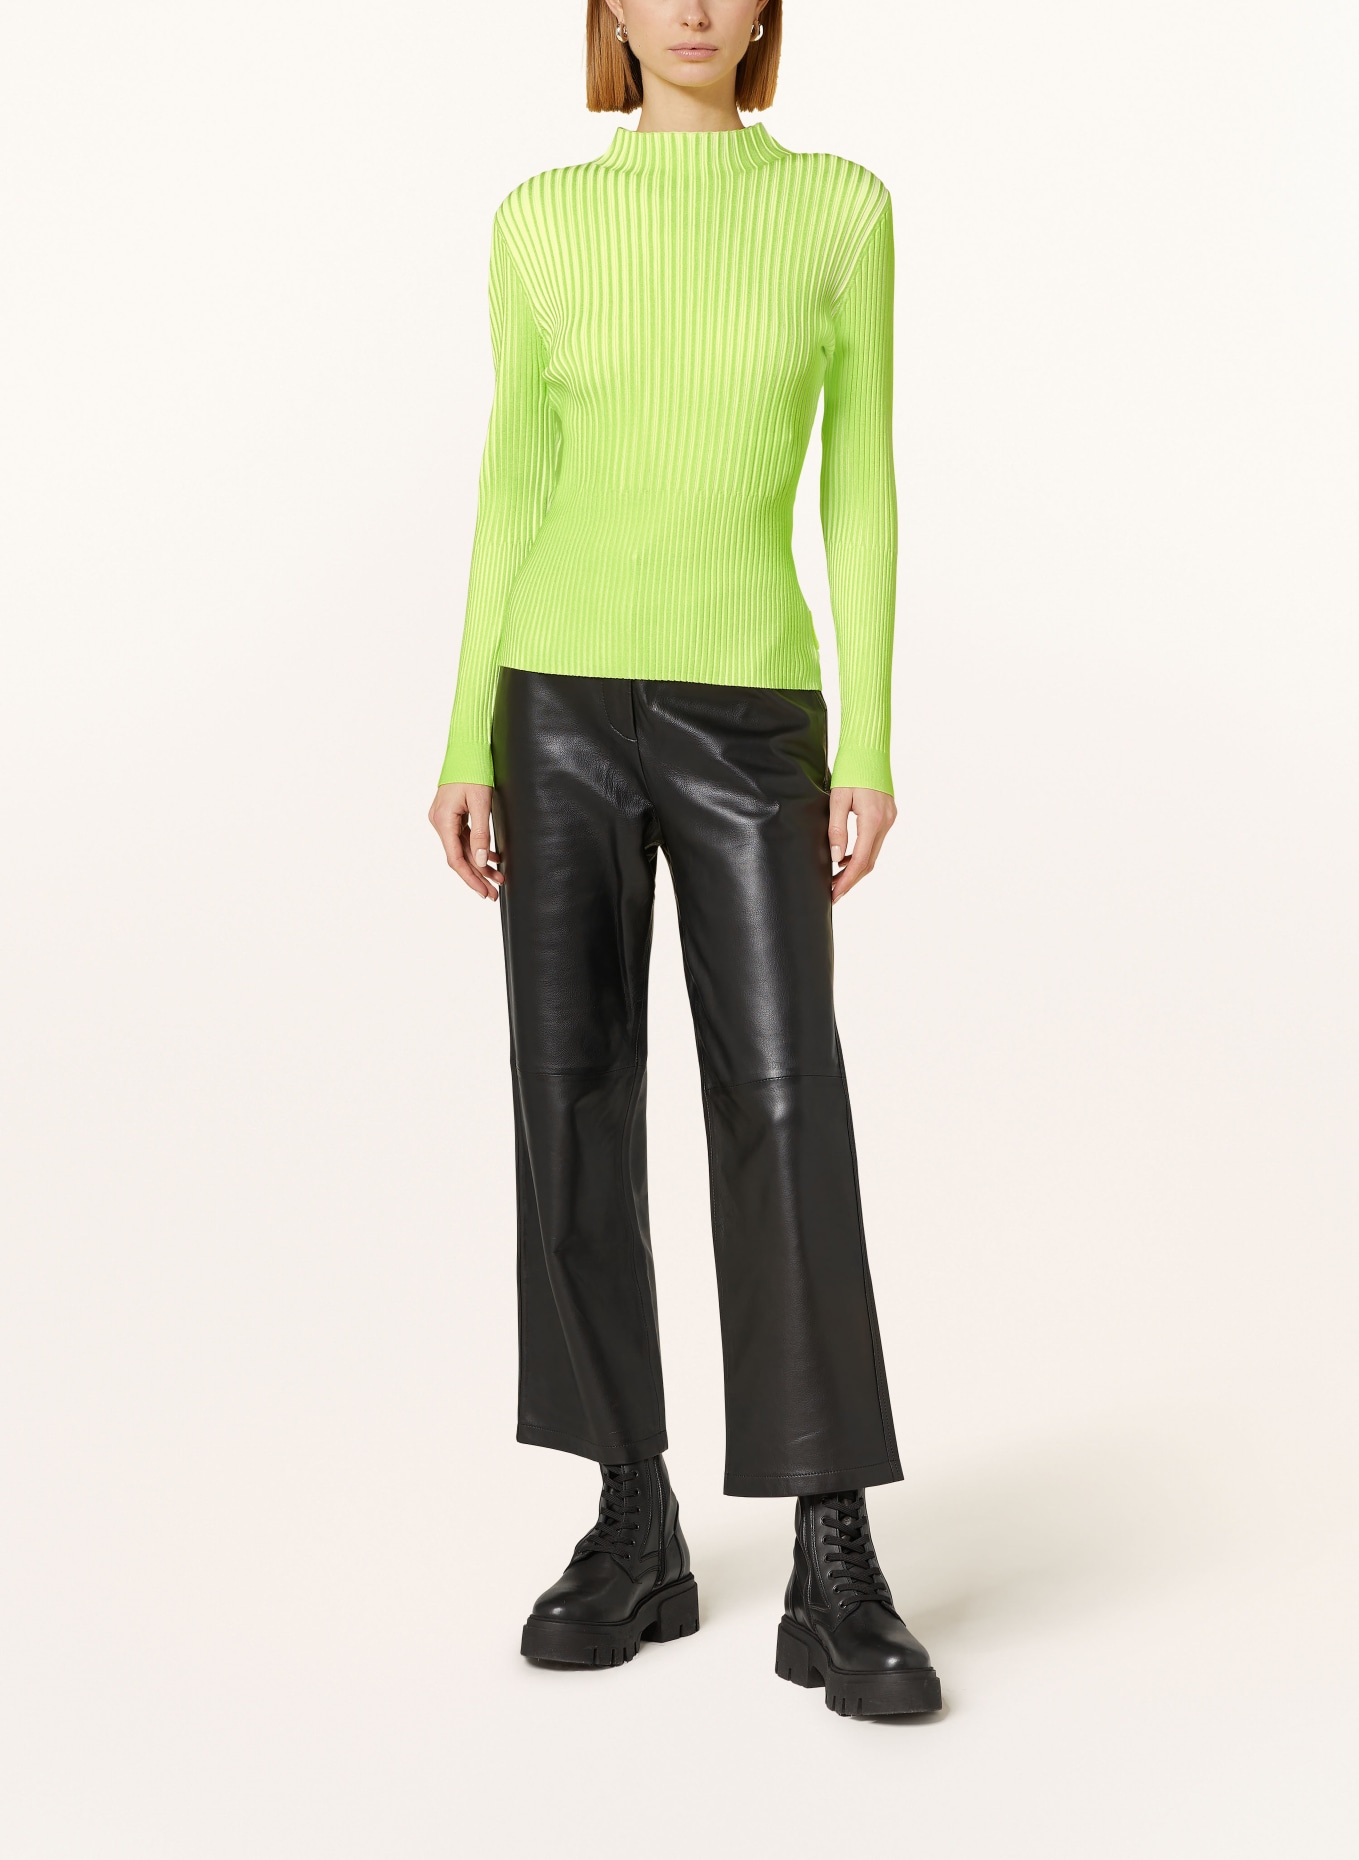 ULLI EHRLICH SPORTALM Sweater, Color: NEON GREEN/ ECRU (Image 2)